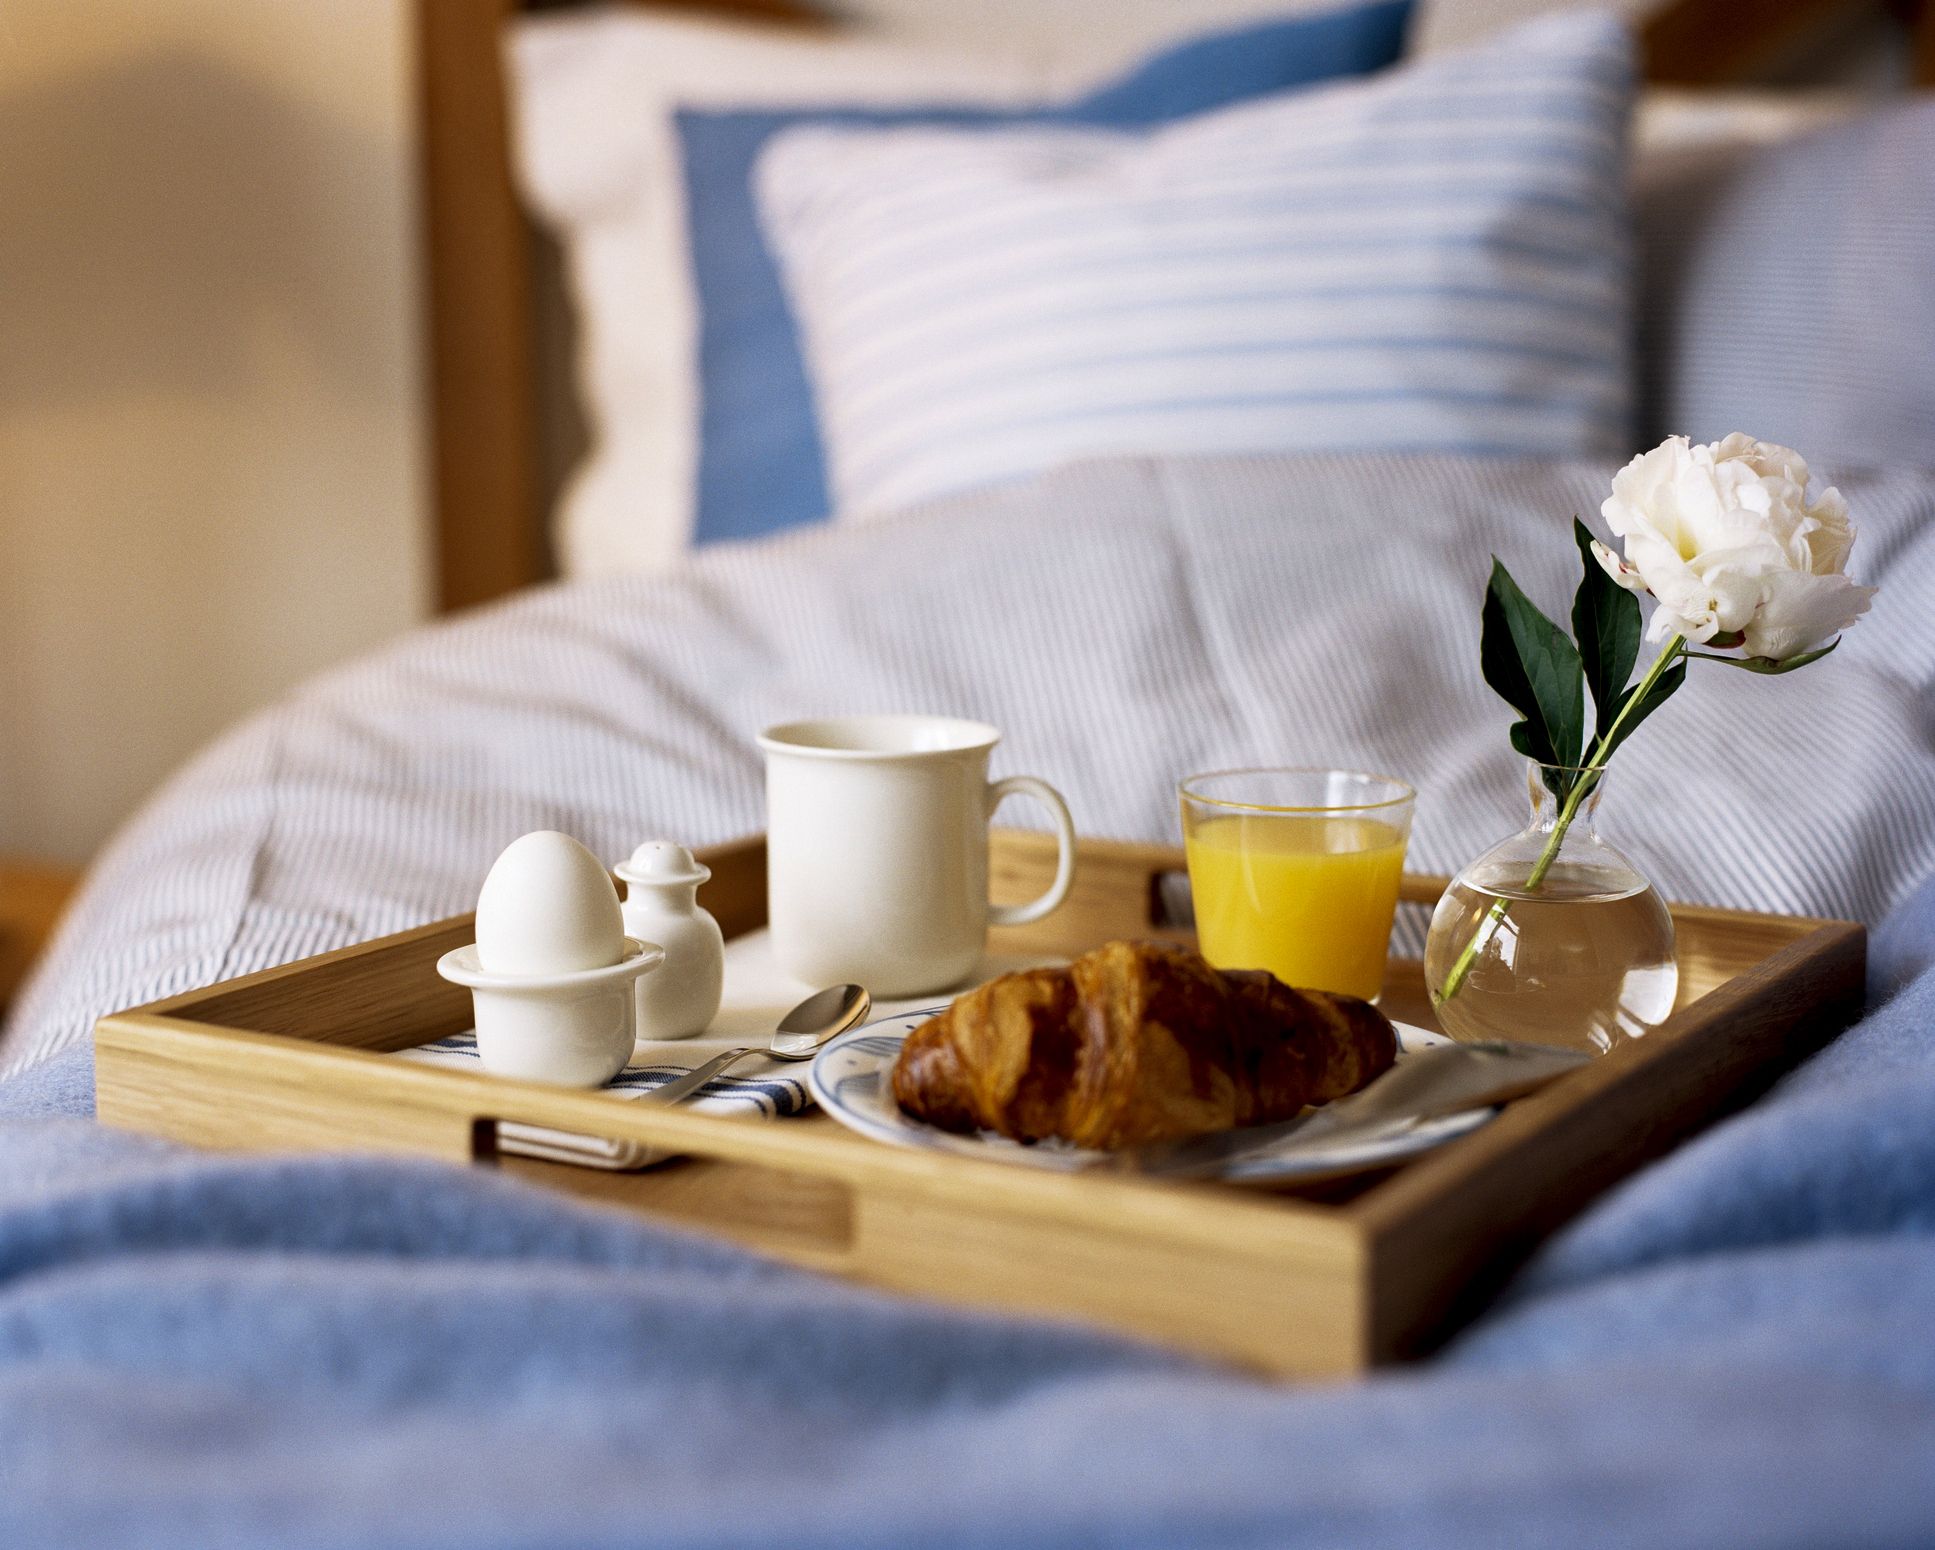 Улеглись в постель. Кофе в постель. Завтрак в постель. Романтический завтрак в постель. Романтическое утро.